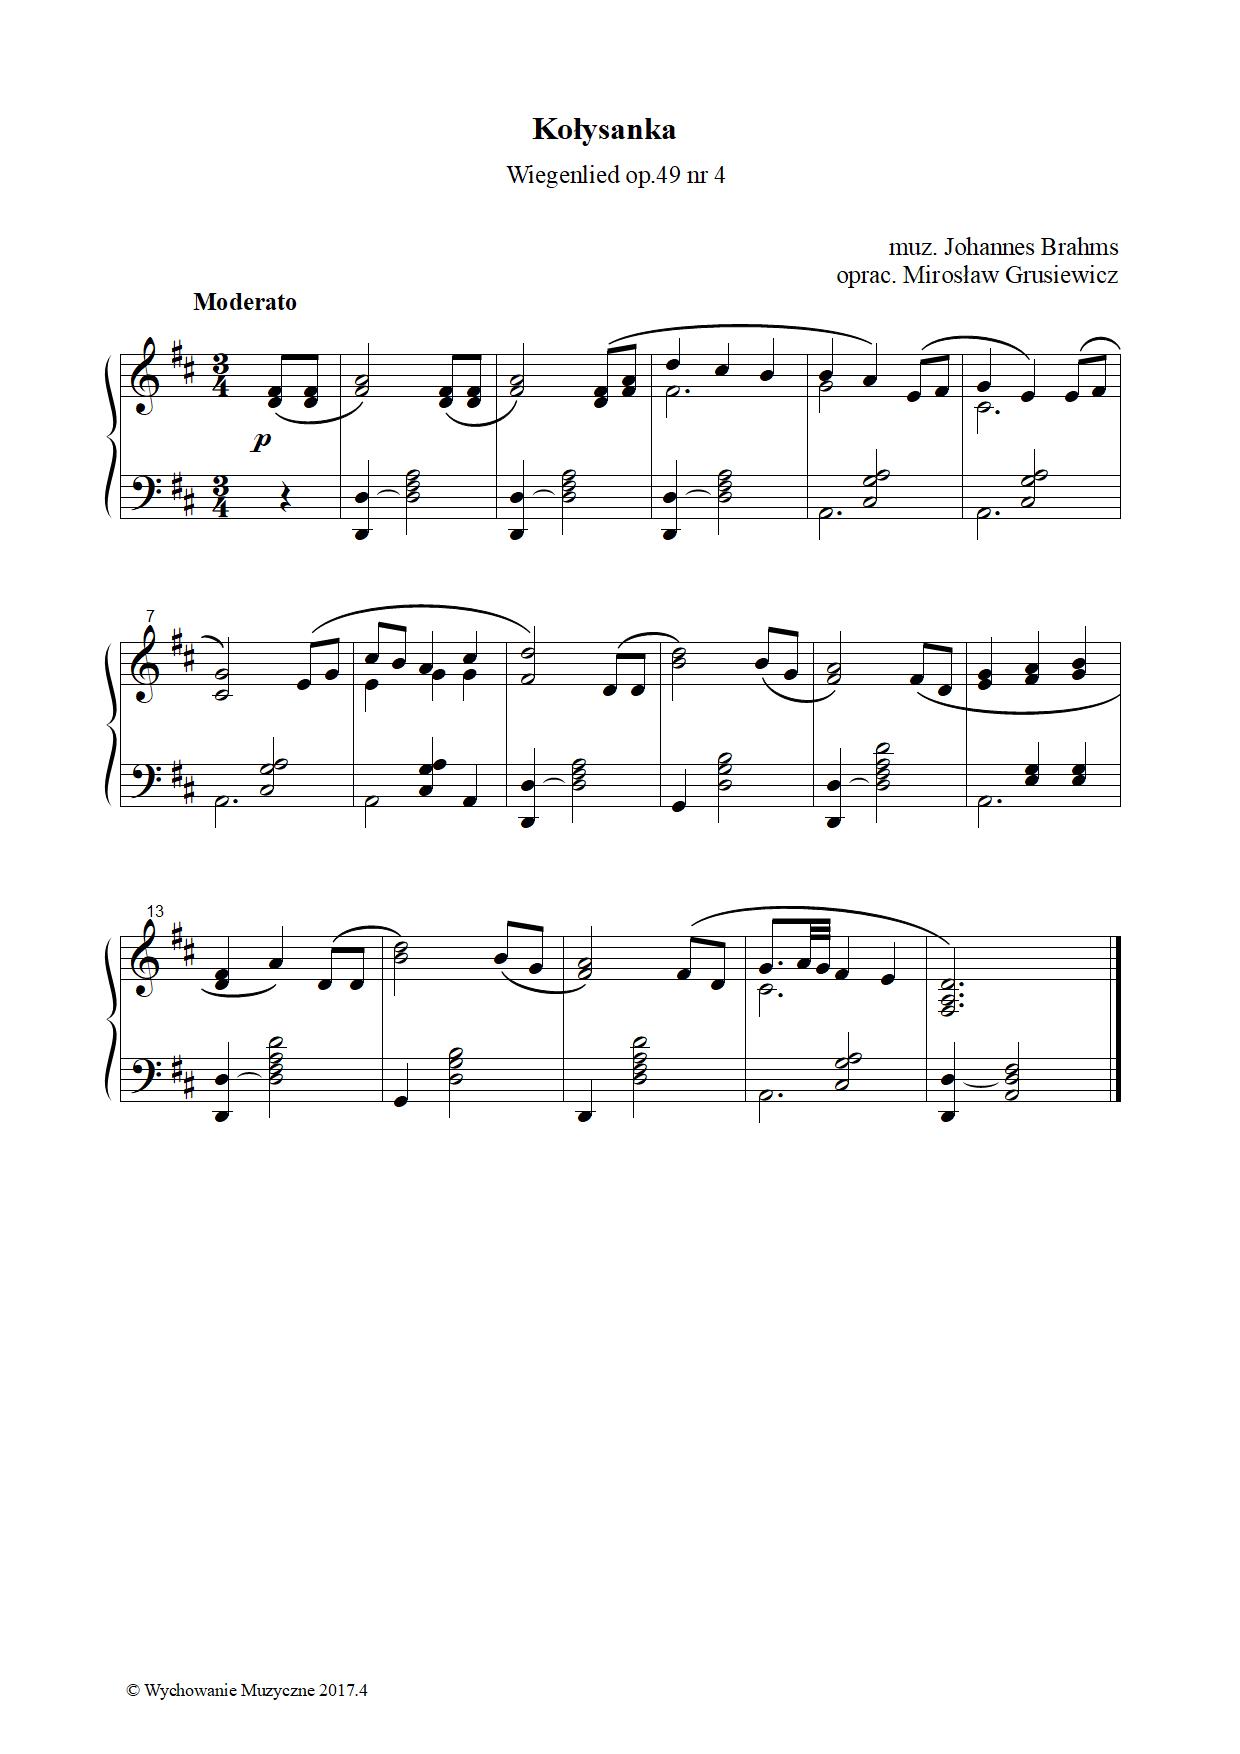 Kołysanka (Wiegenlied op.49 nr 4)